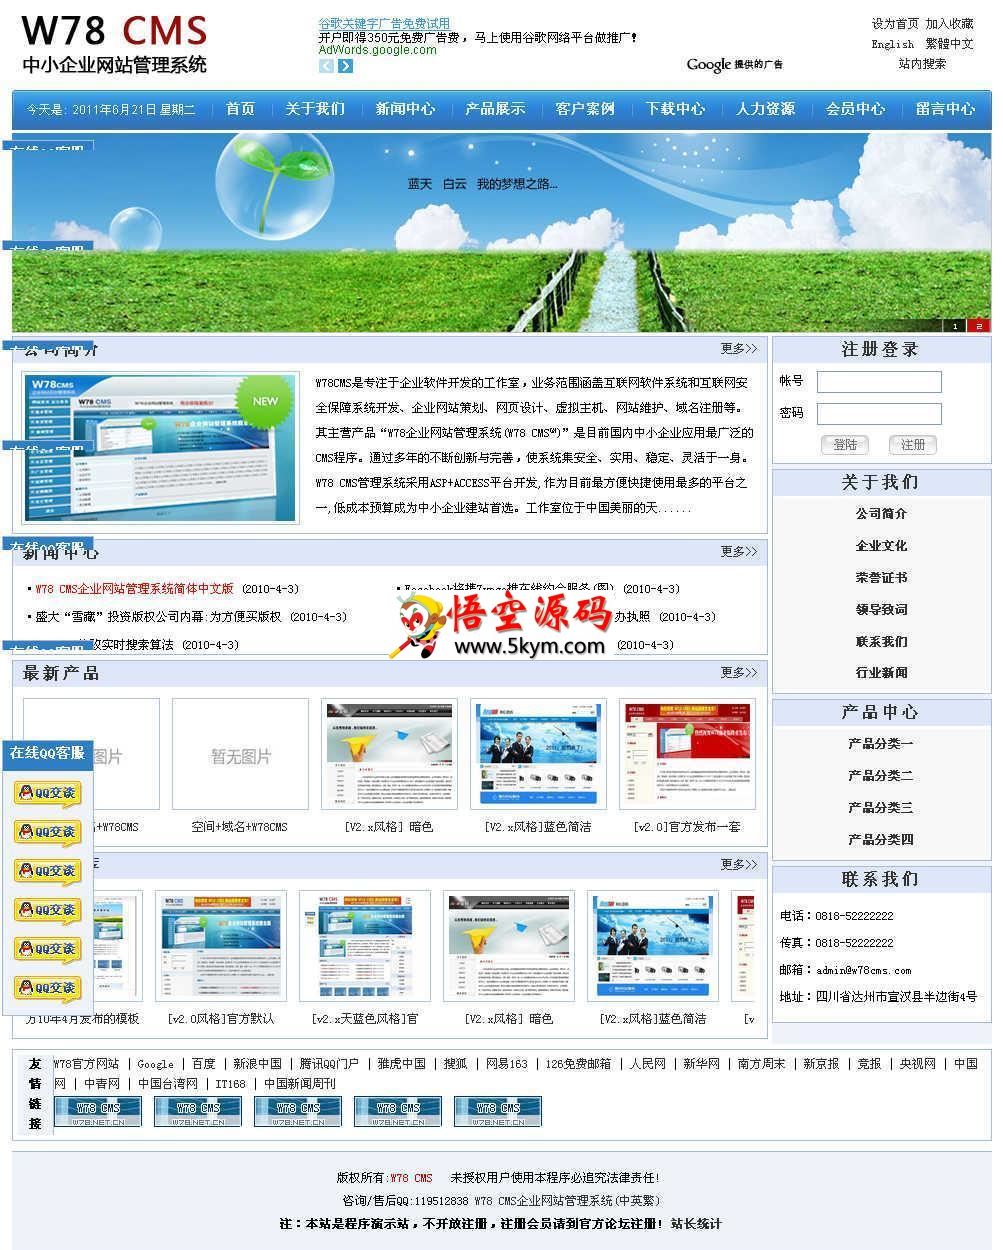 W78CMS企业网站管理系统(中英繁)多语版 v140424